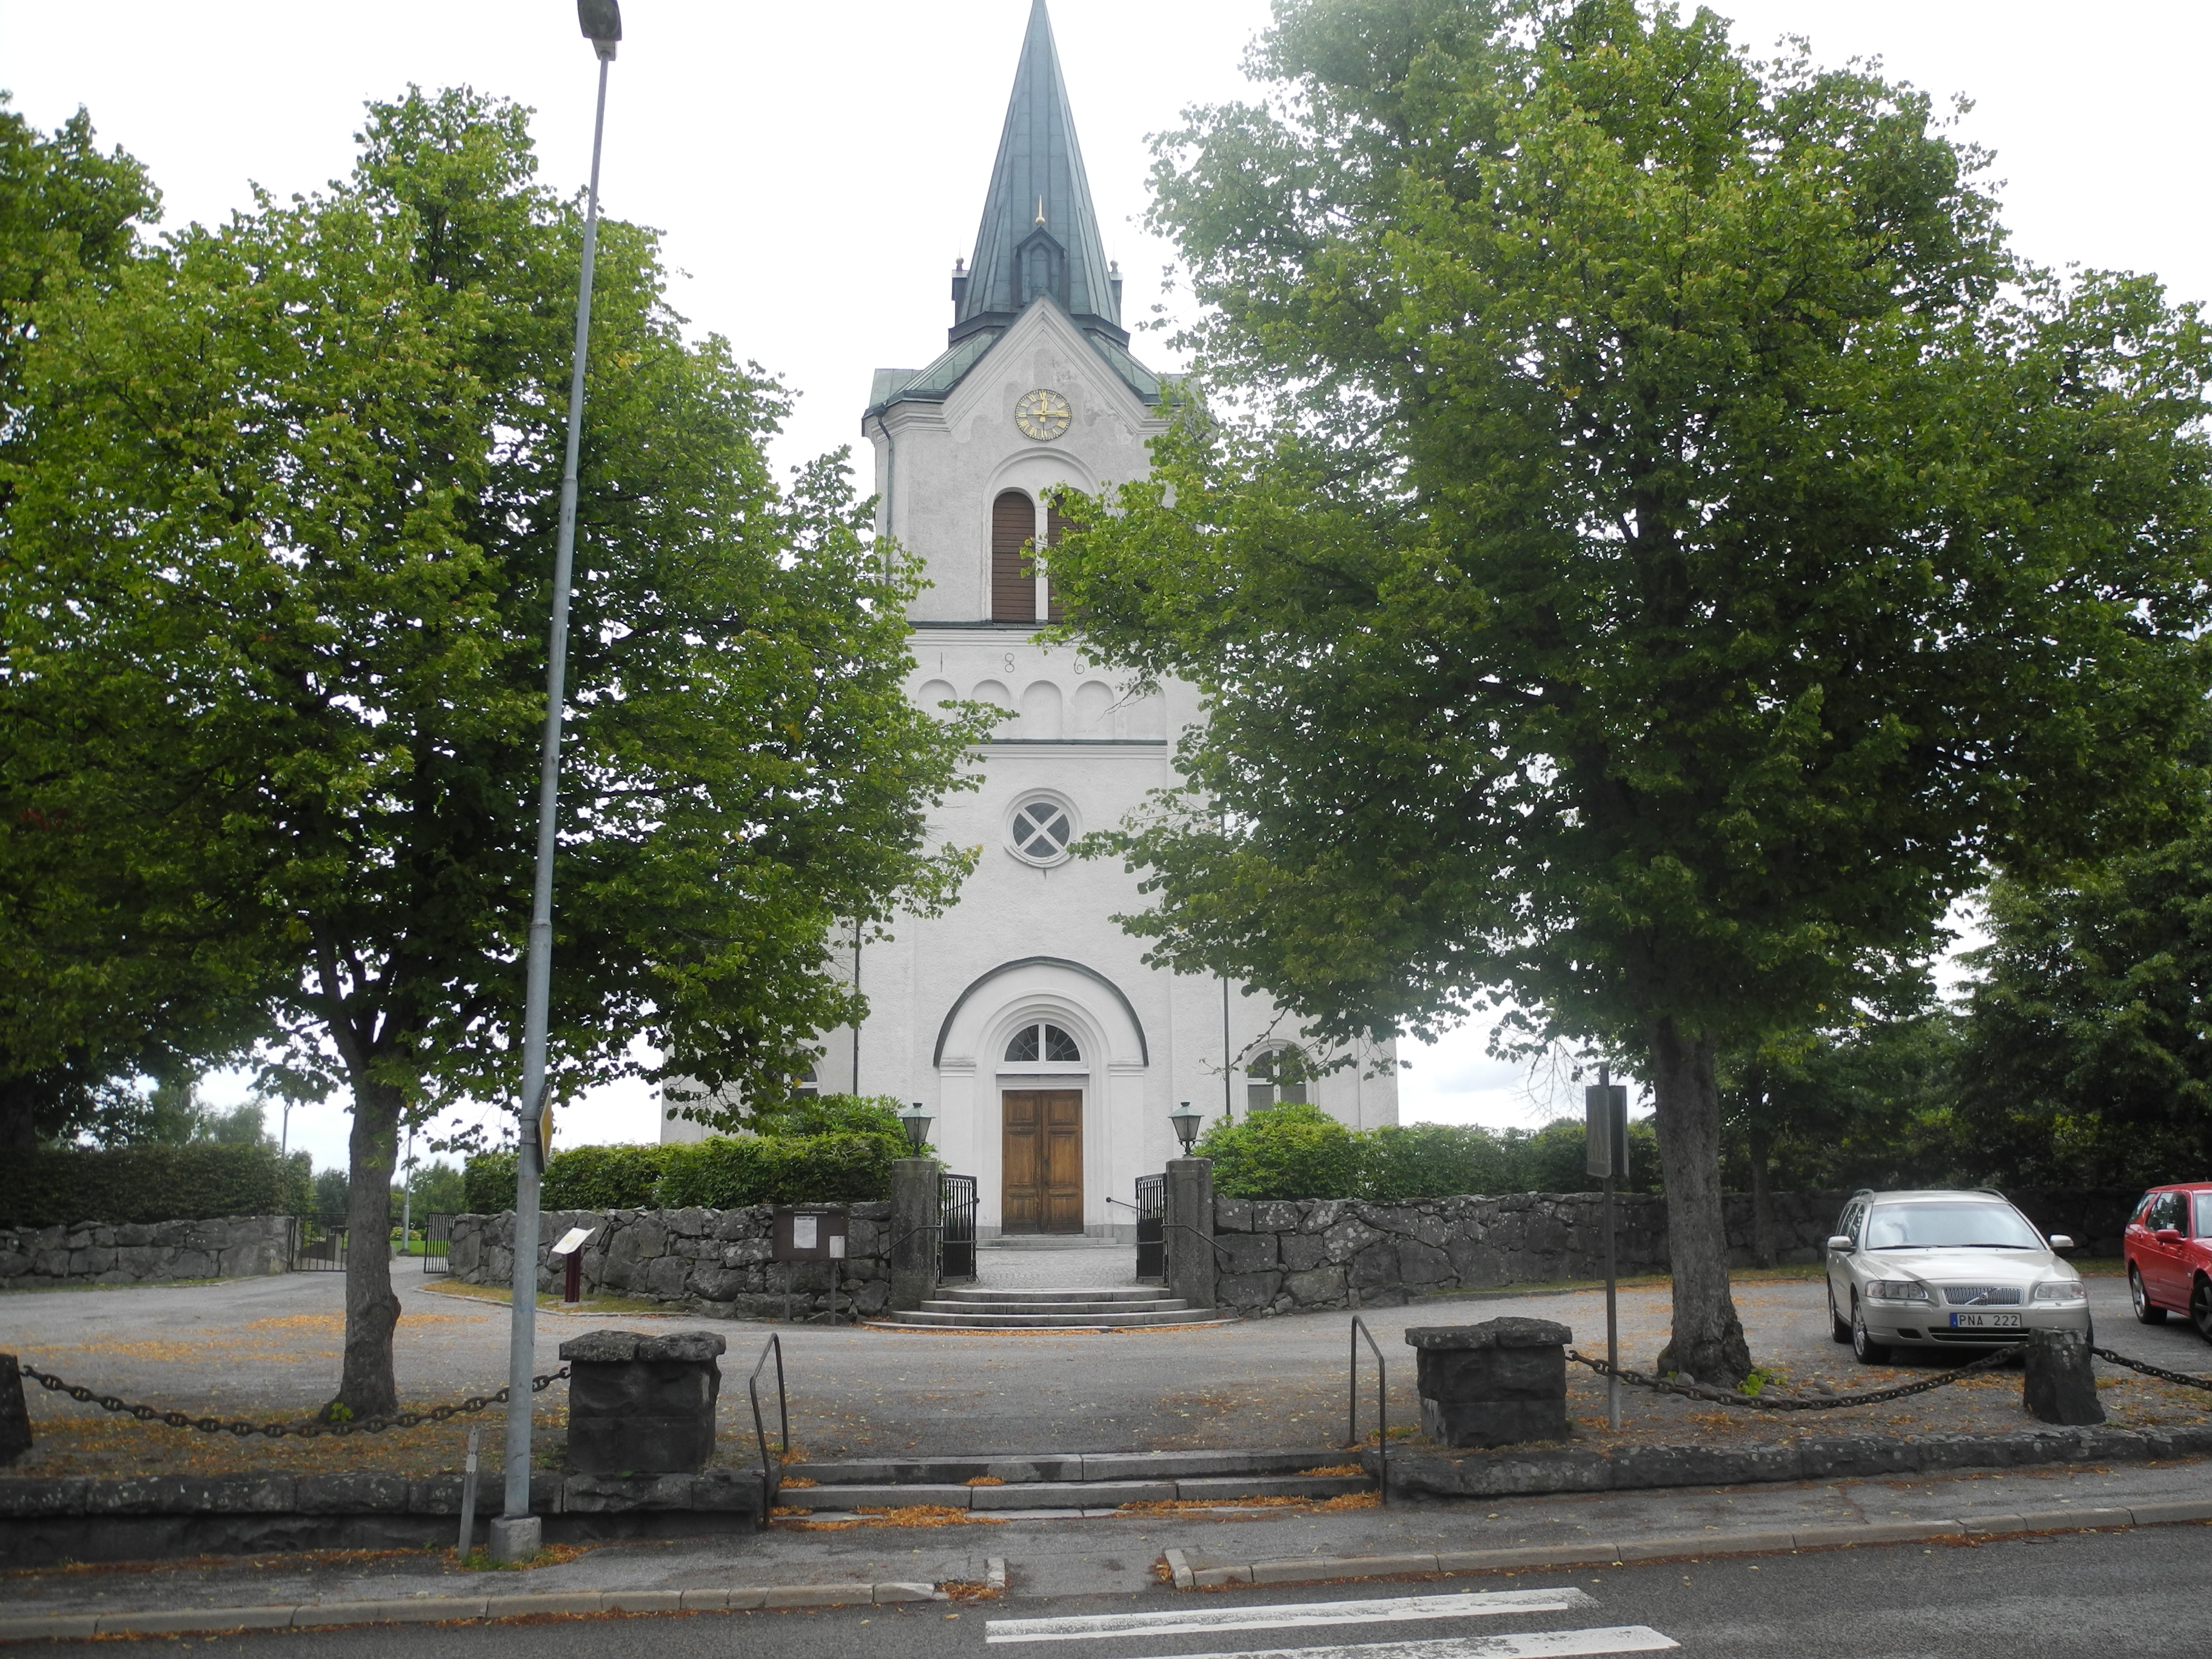 Kyrkhults kyrka från väster.